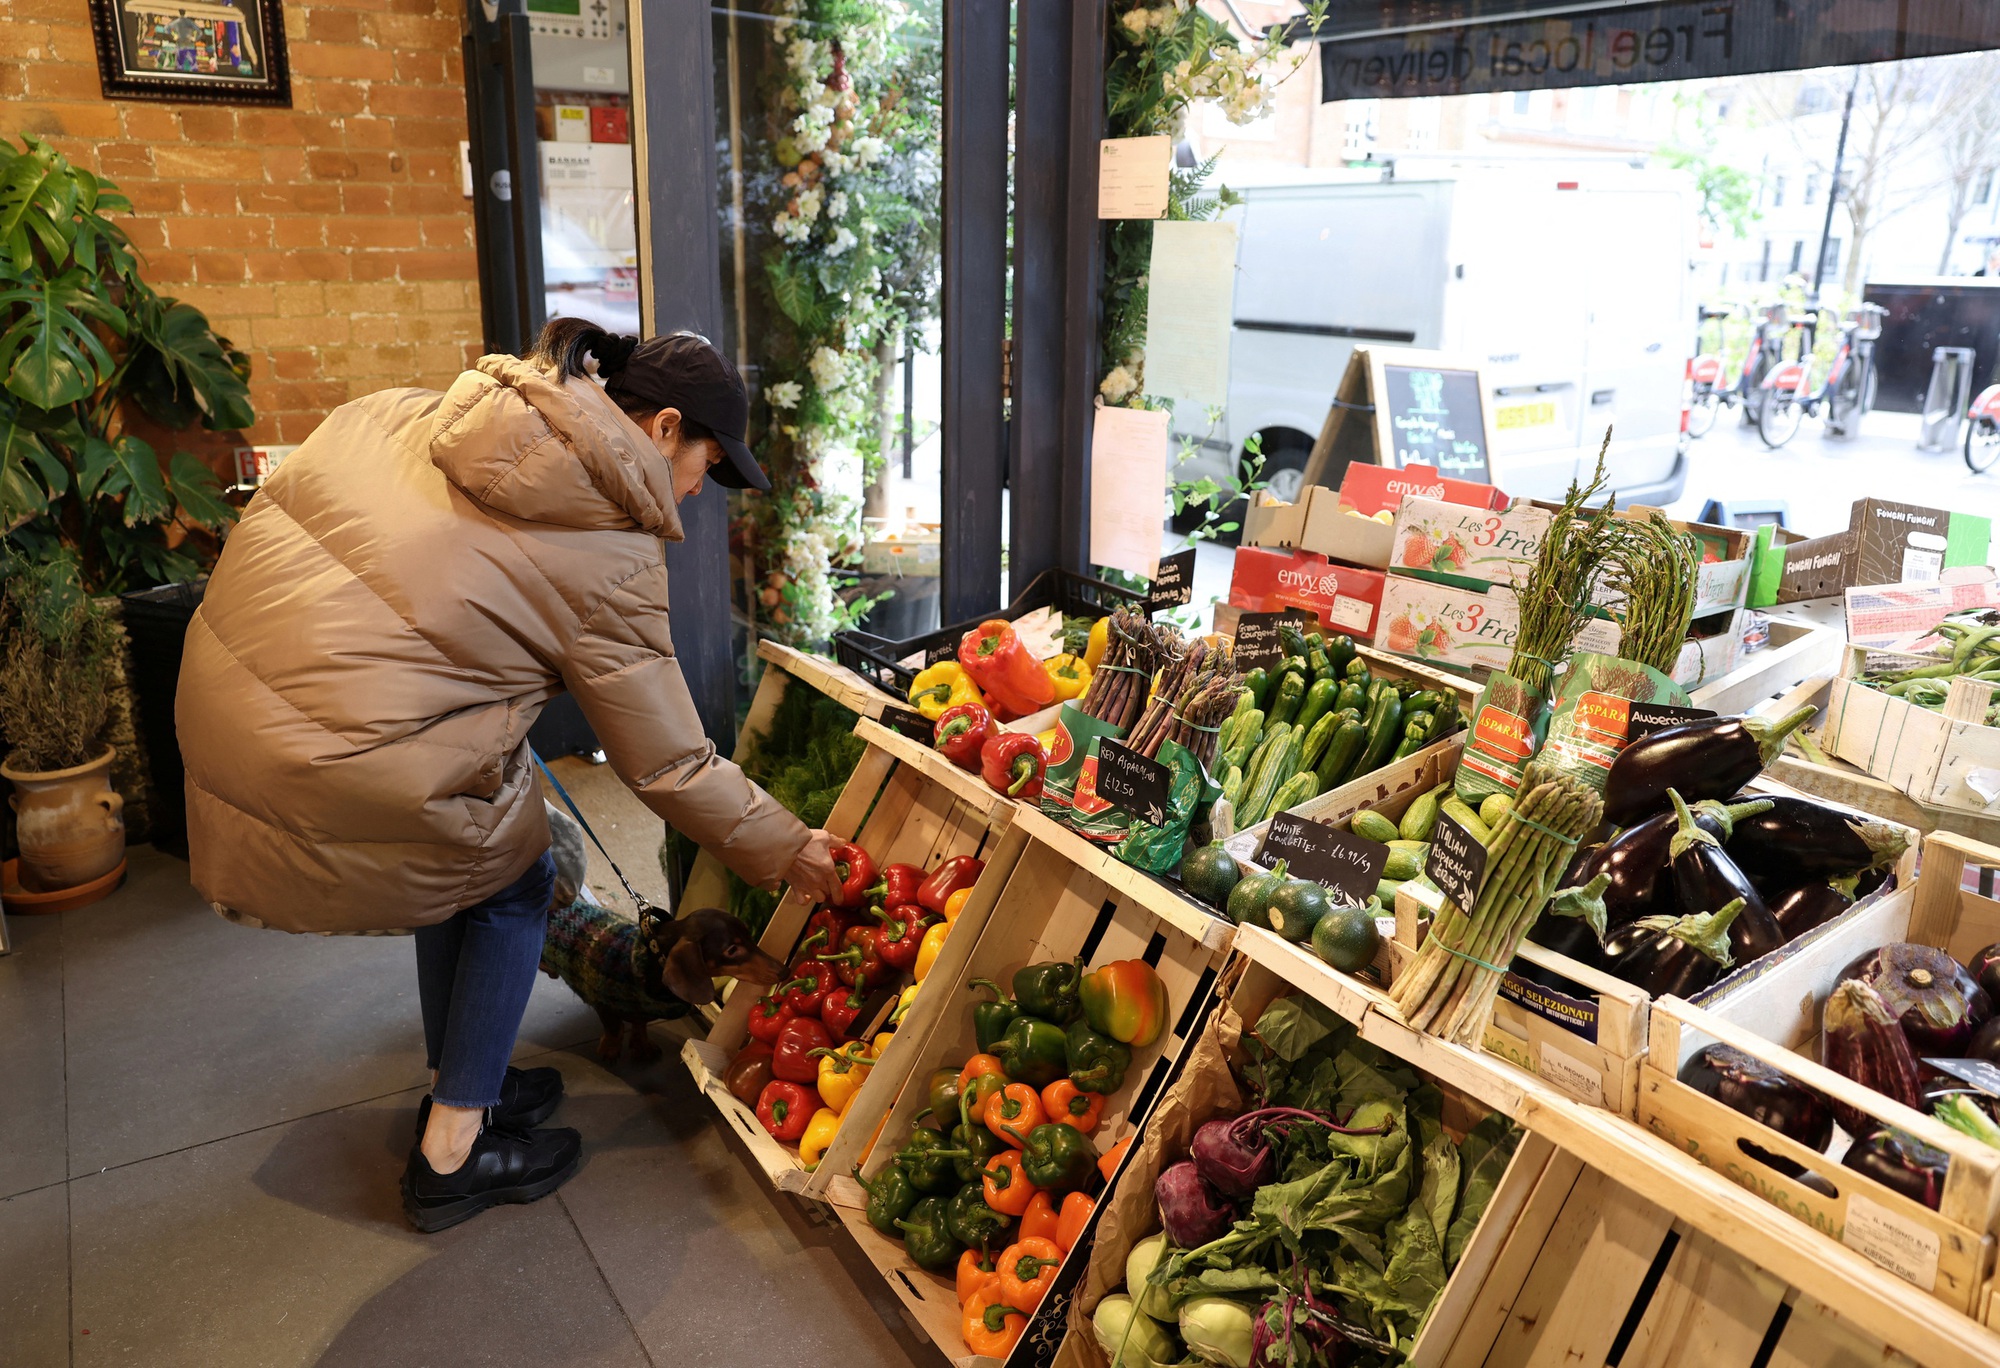 Khách hàng mua rau tại cửa hàng tạp hóa ở London - Anh hôm 28-3 Ảnh: REUTERS